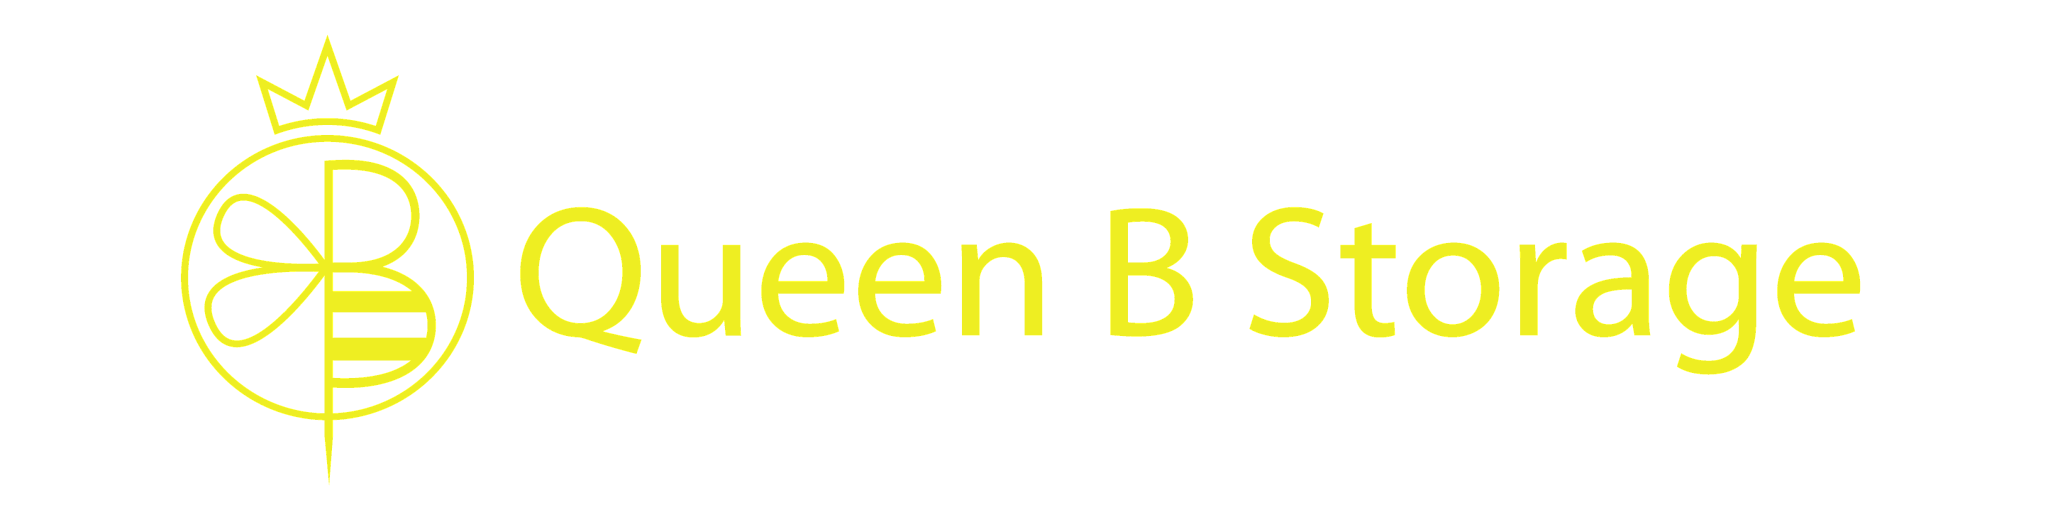 Queen B Storage